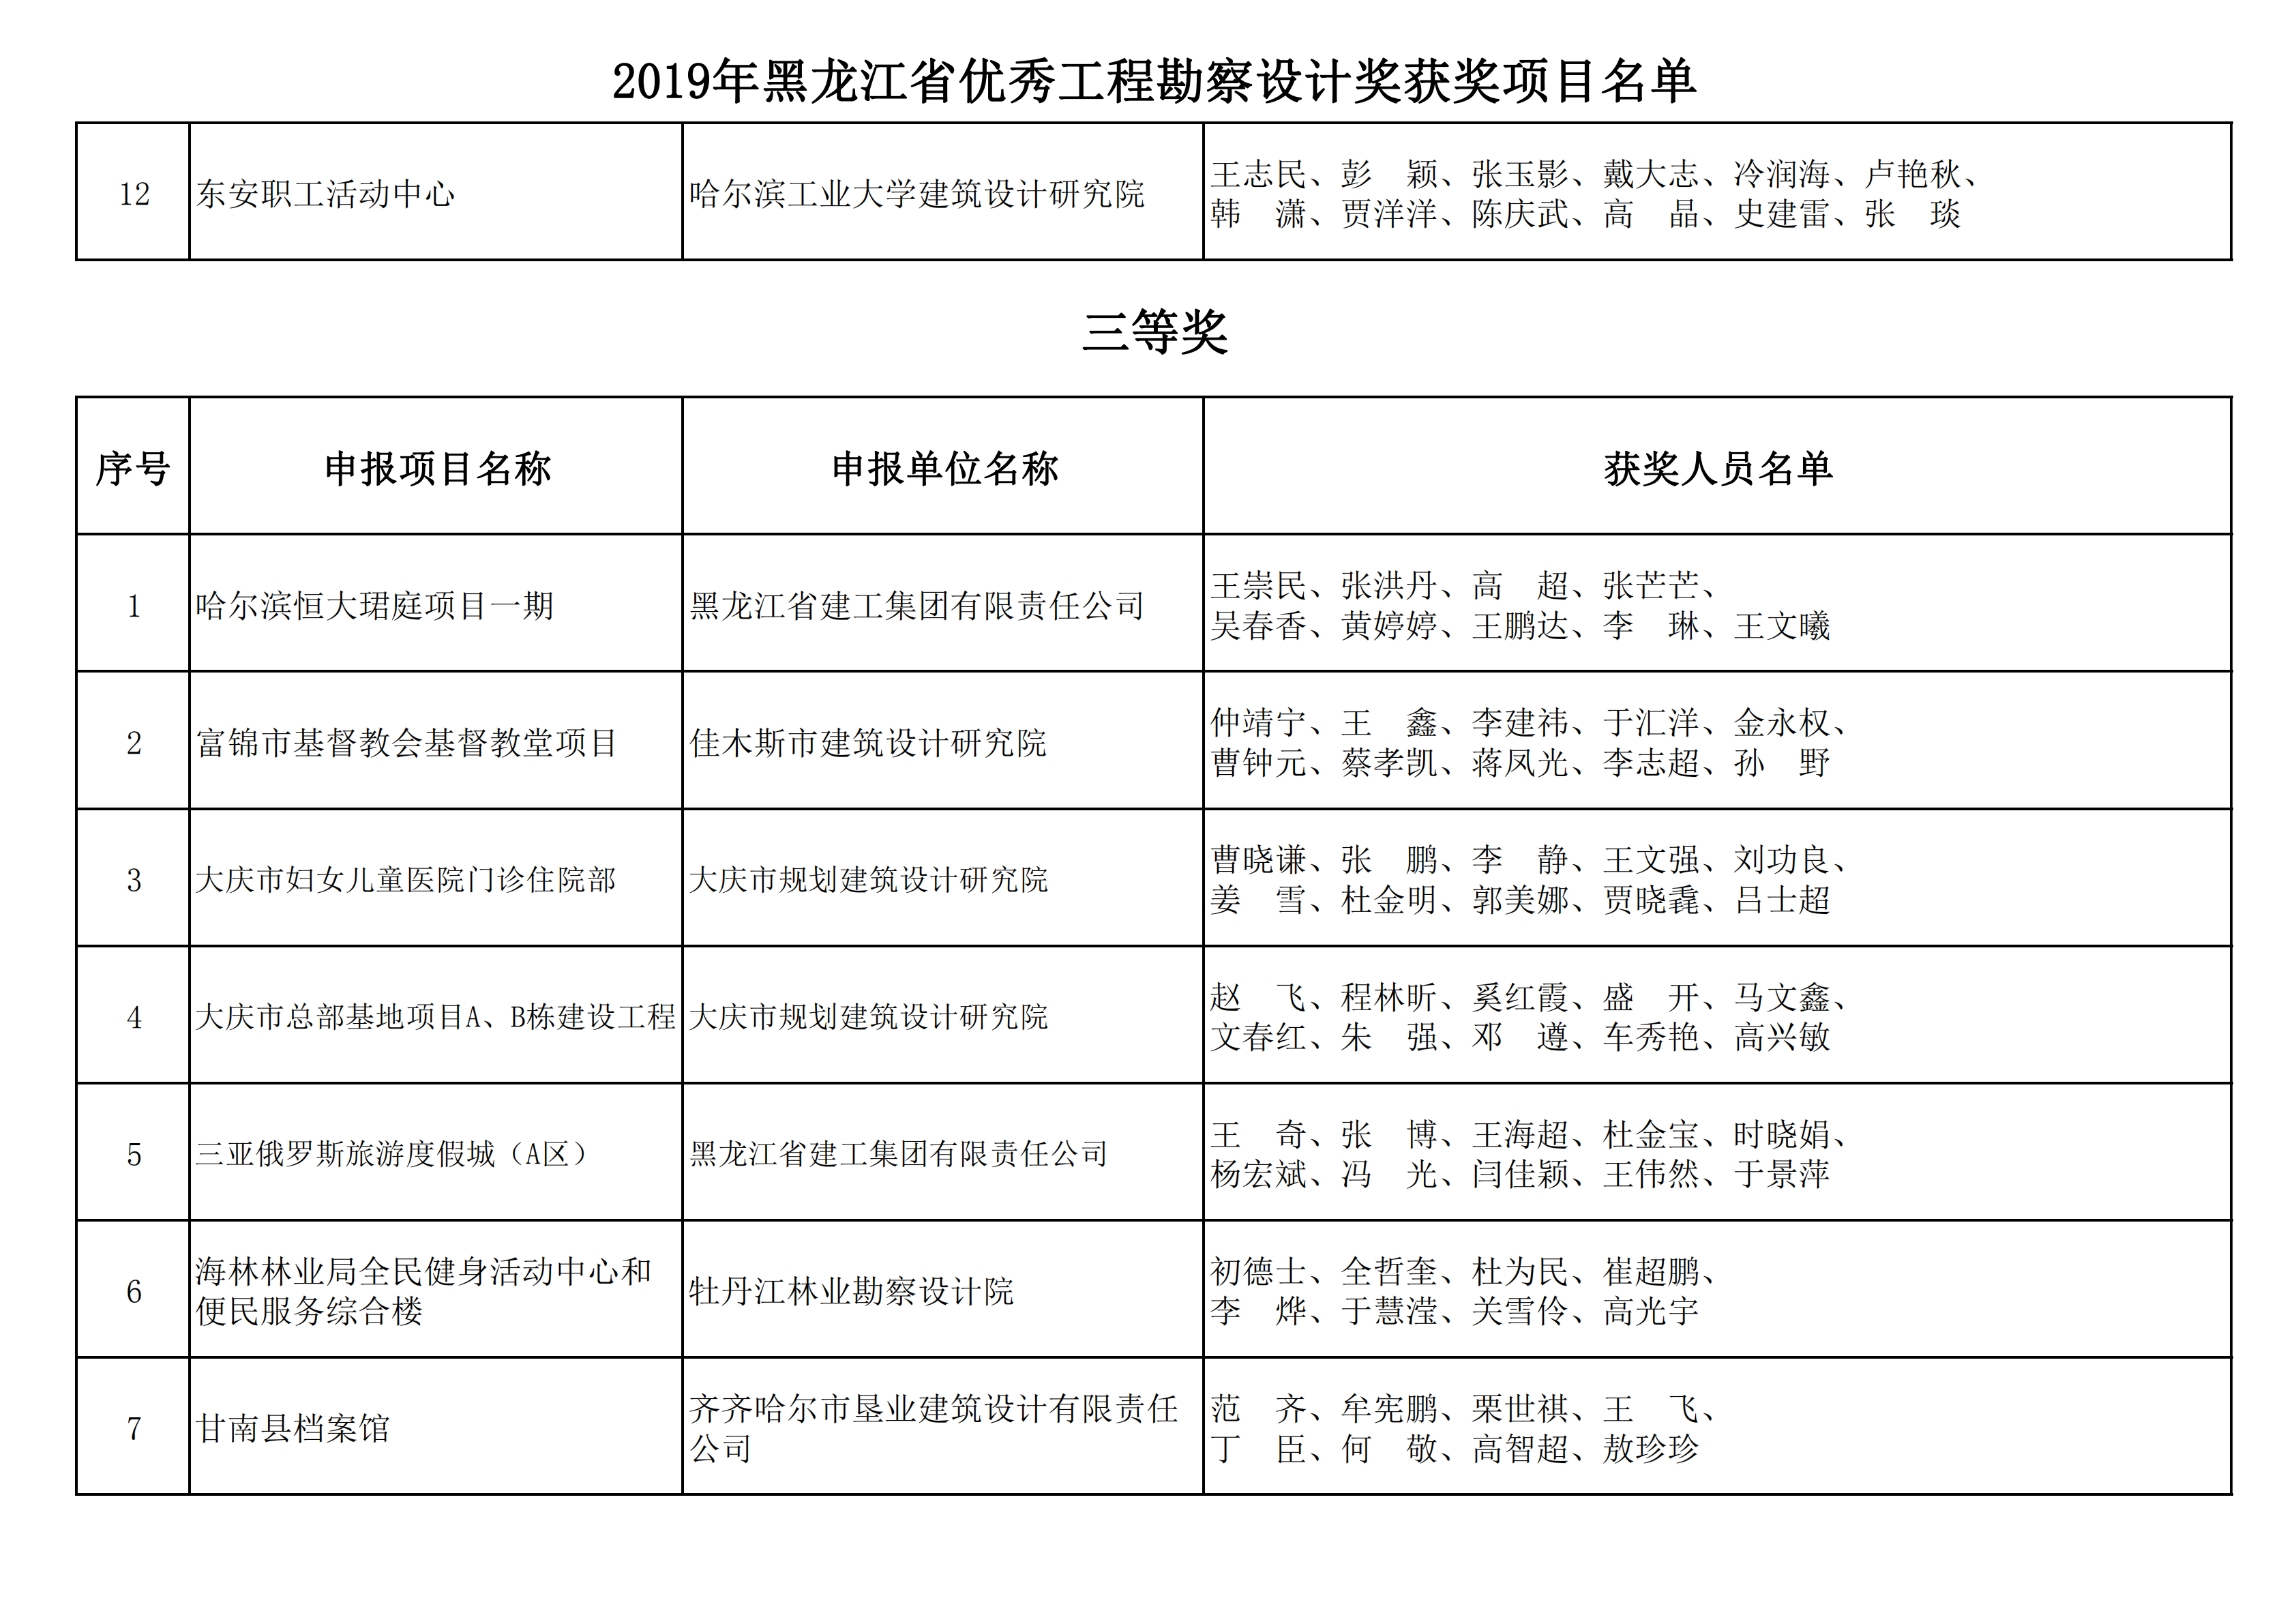 2019年黑龙江省优秀工程勘察设计奖获奖项目名单_02.png